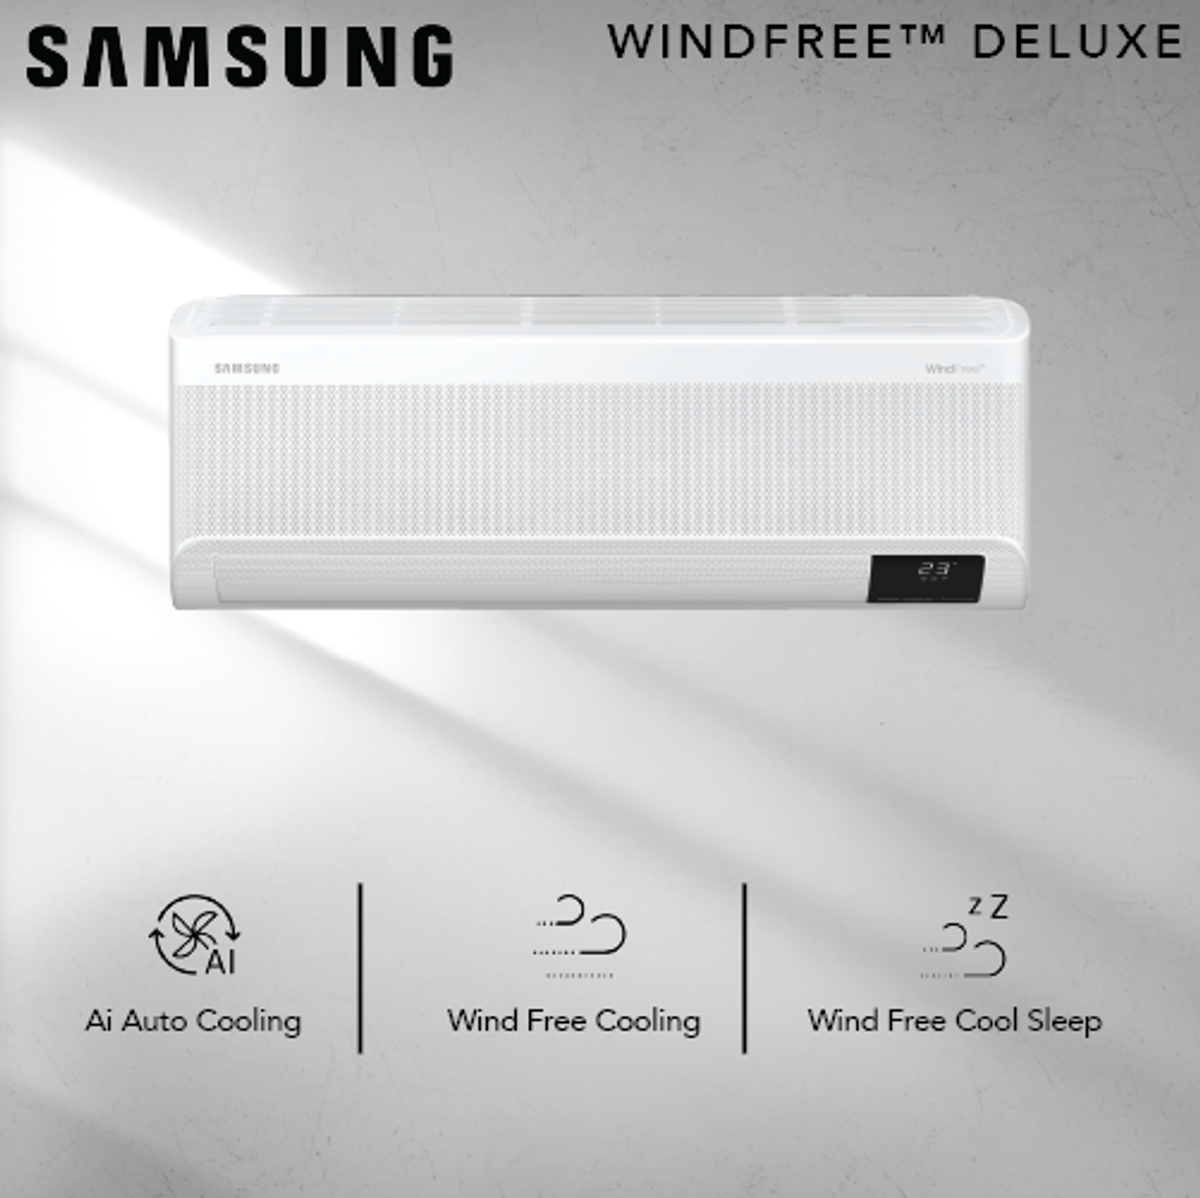 Meet the Samsung Windfree Deluxe Inverter